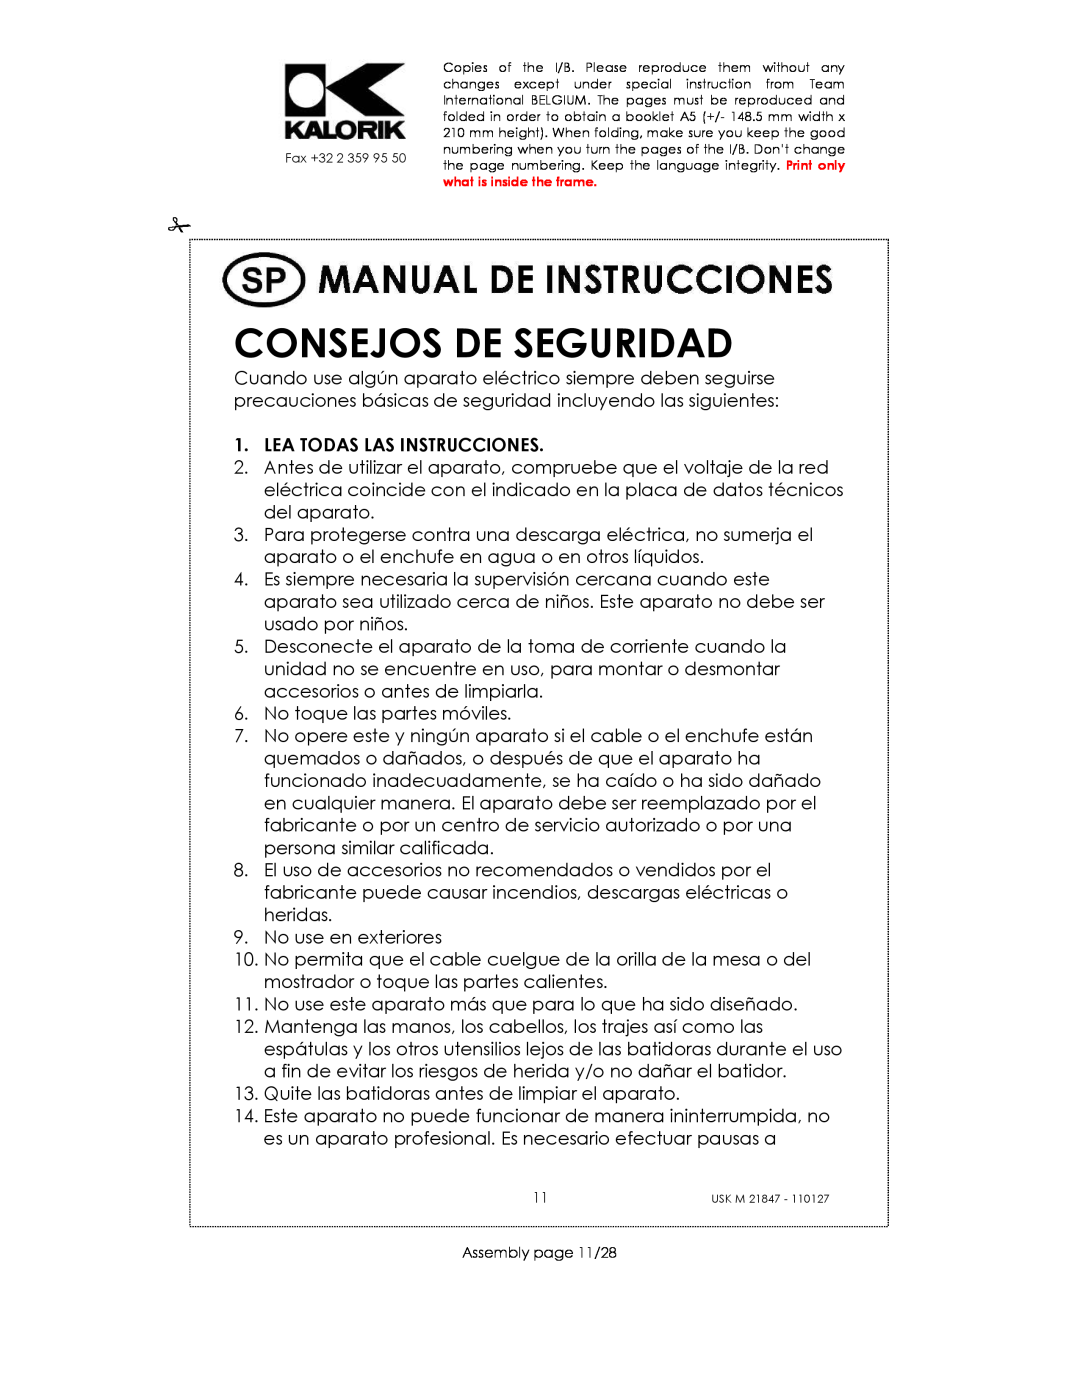 Kalorik USK M 21847 manual Consejos De Seguridad, Lea Todas Las Instrucciones 